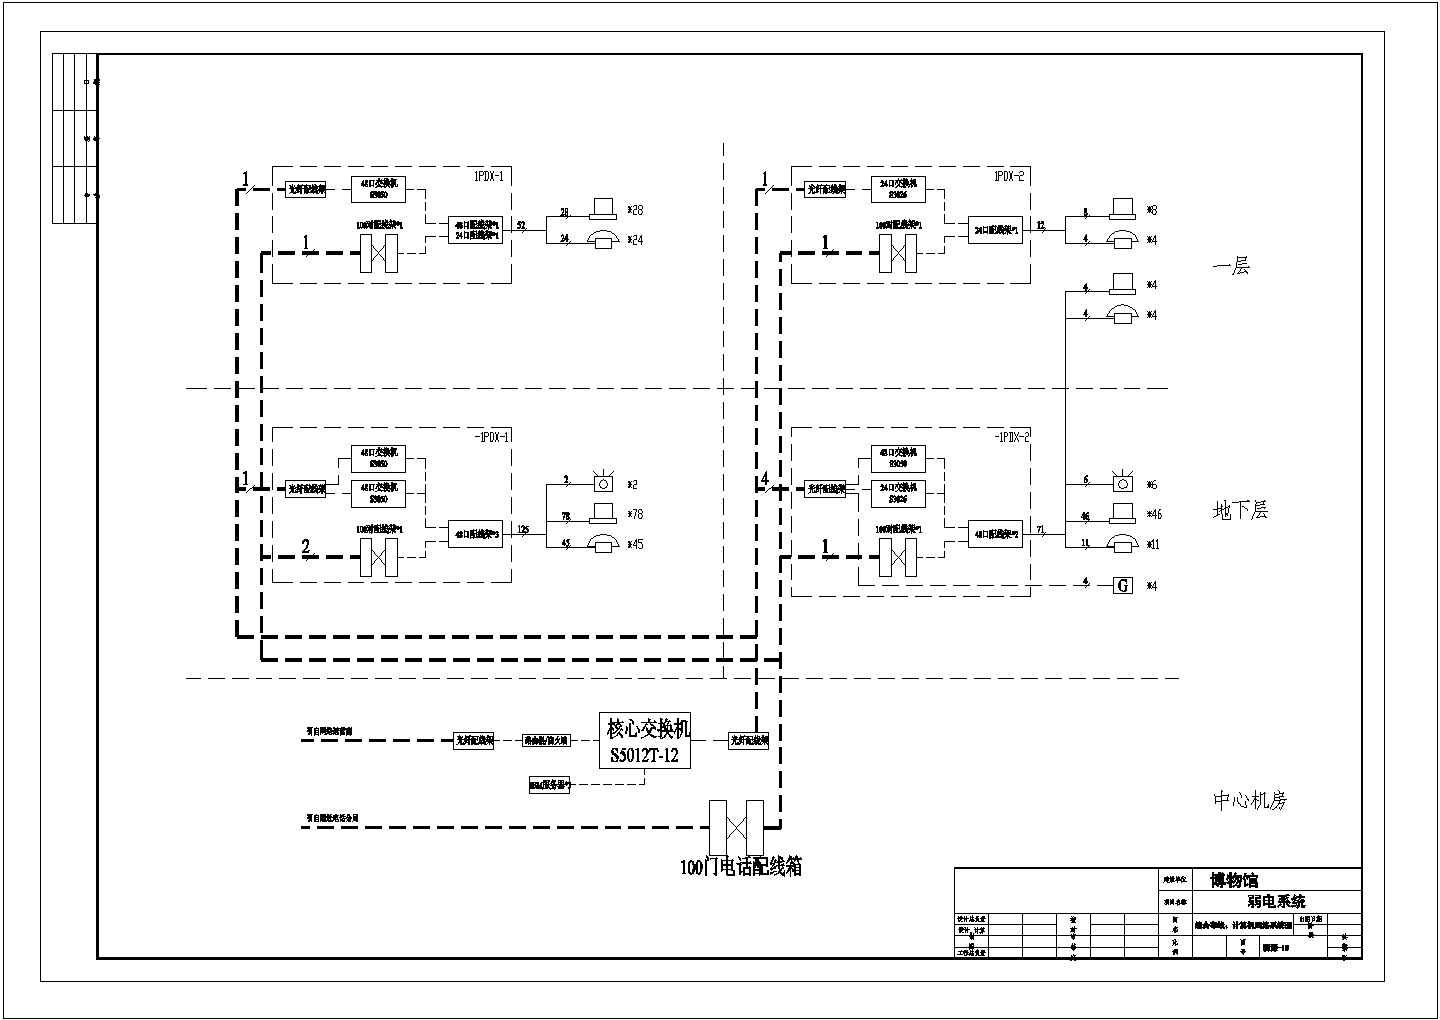 某博物馆电气CAD施工图综合布线计算机网络系统图